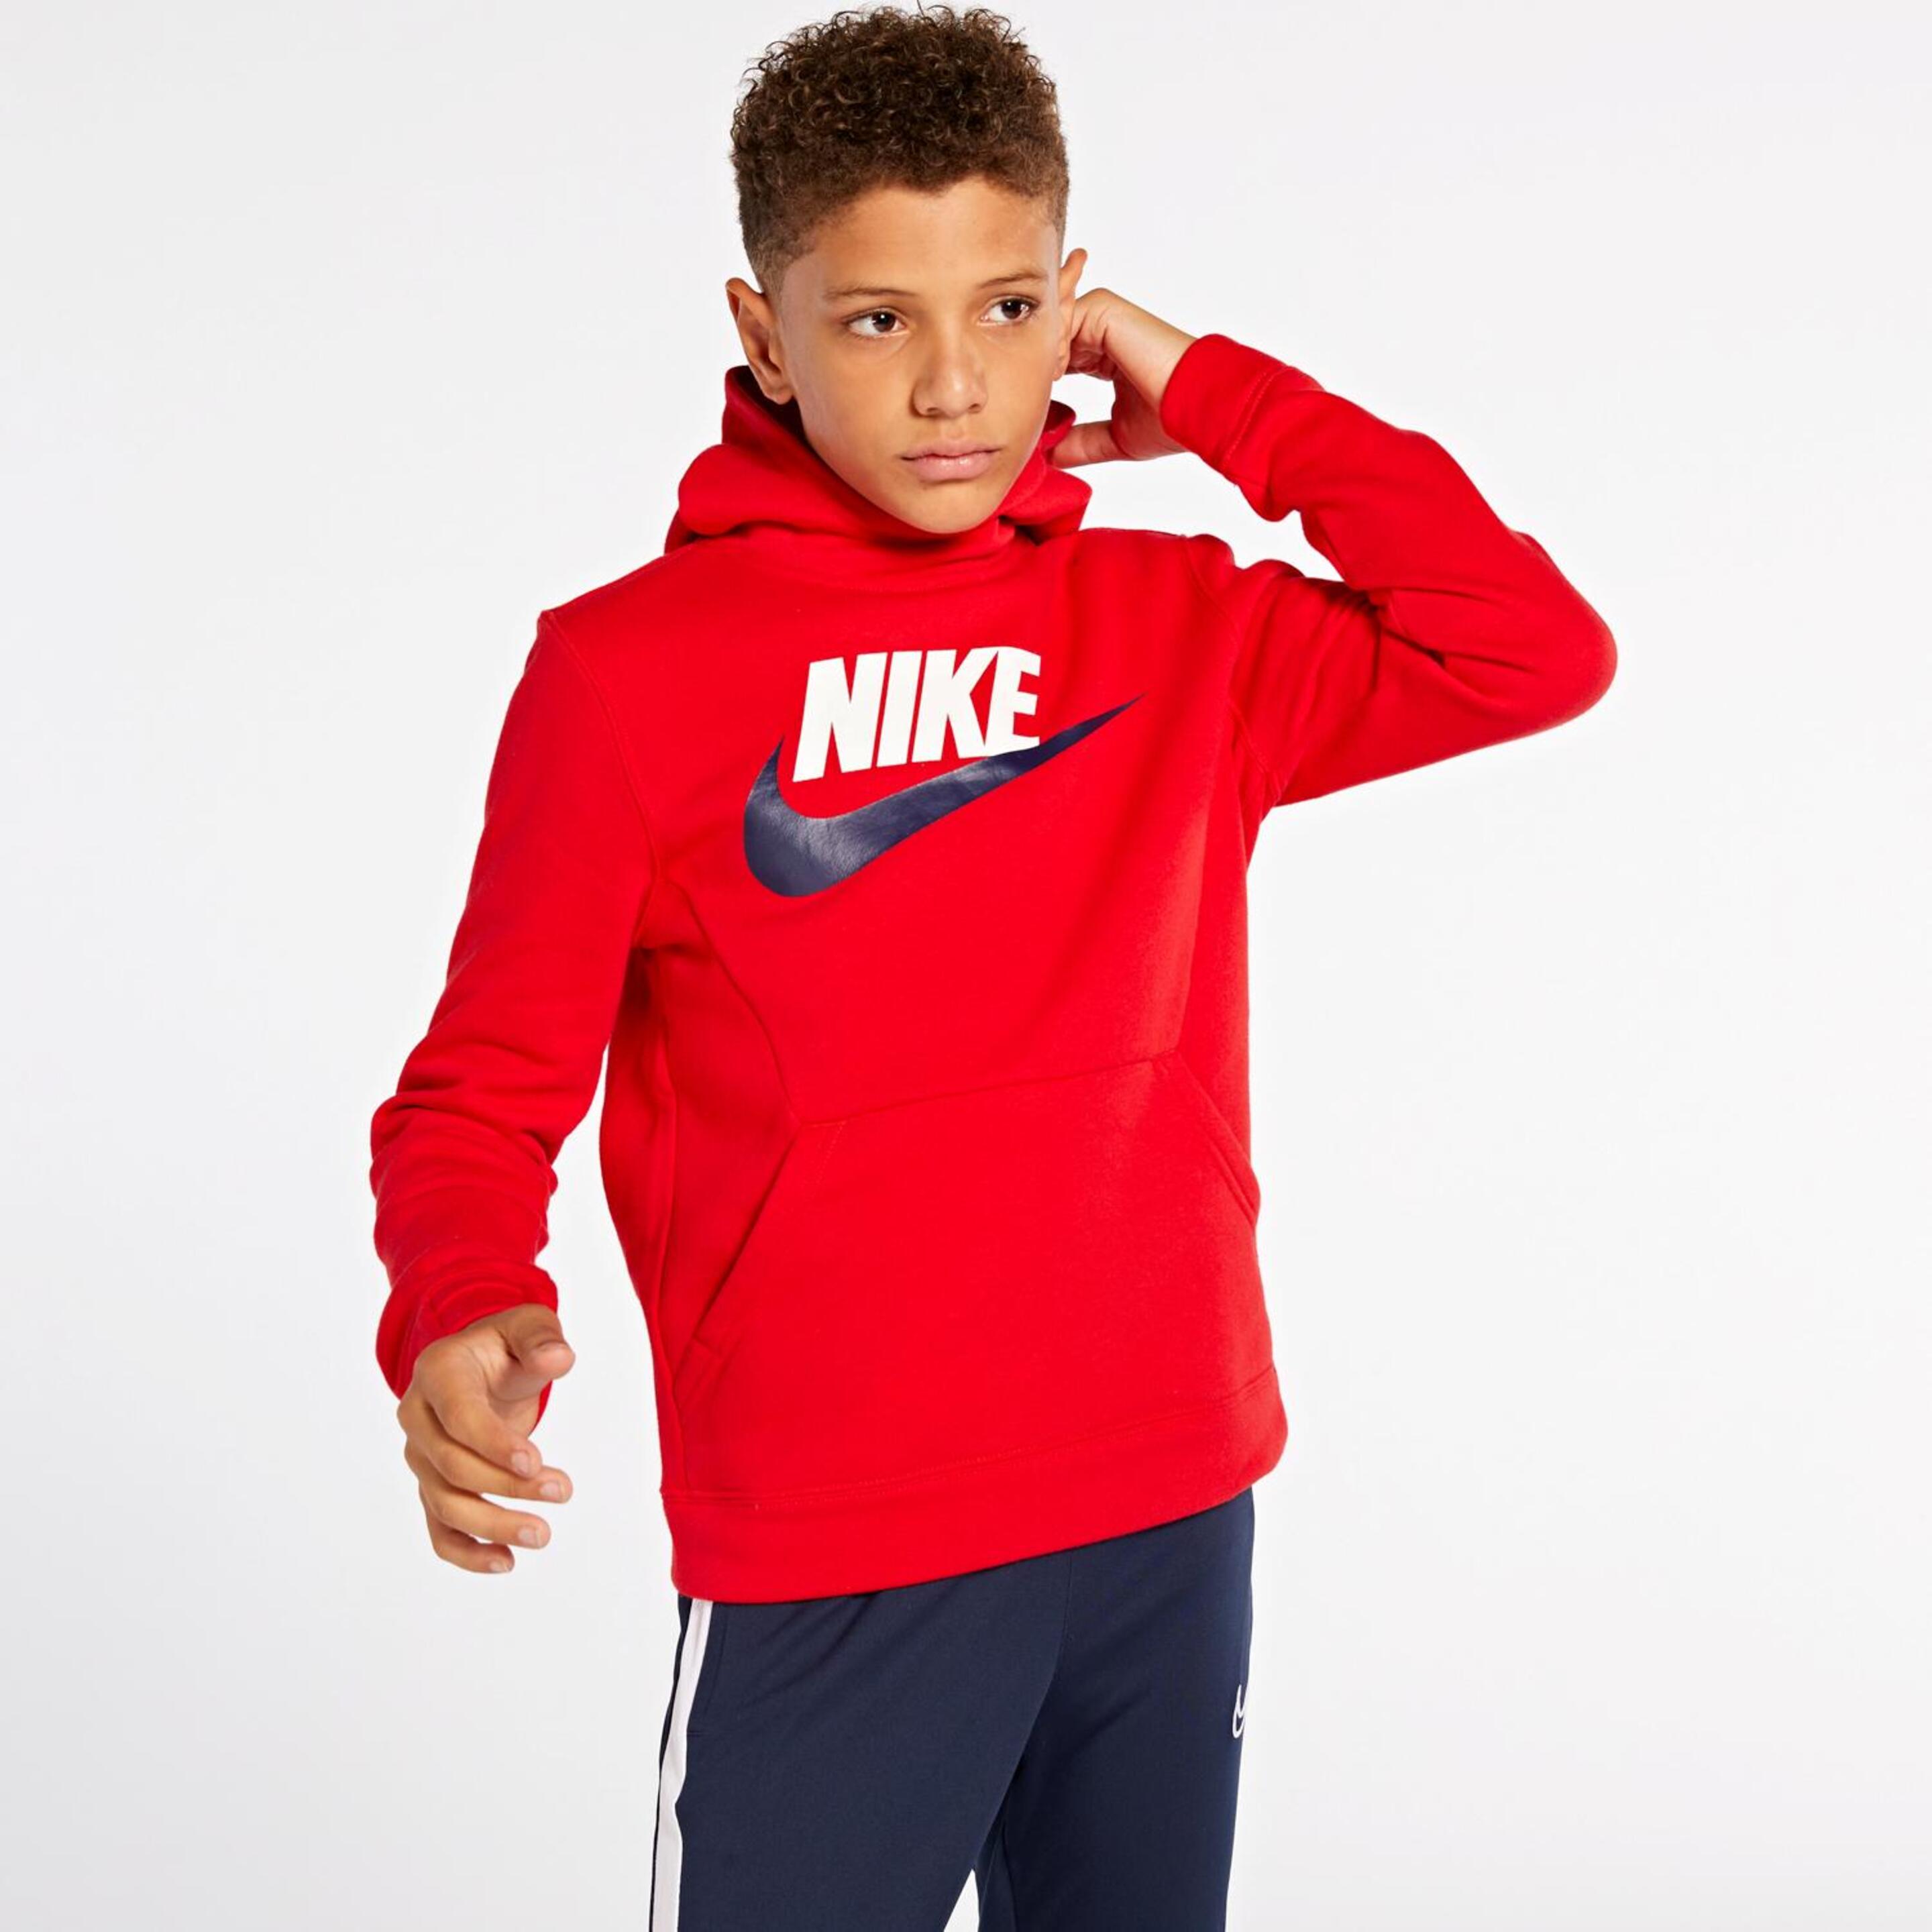 Sweatshirt Nike Air